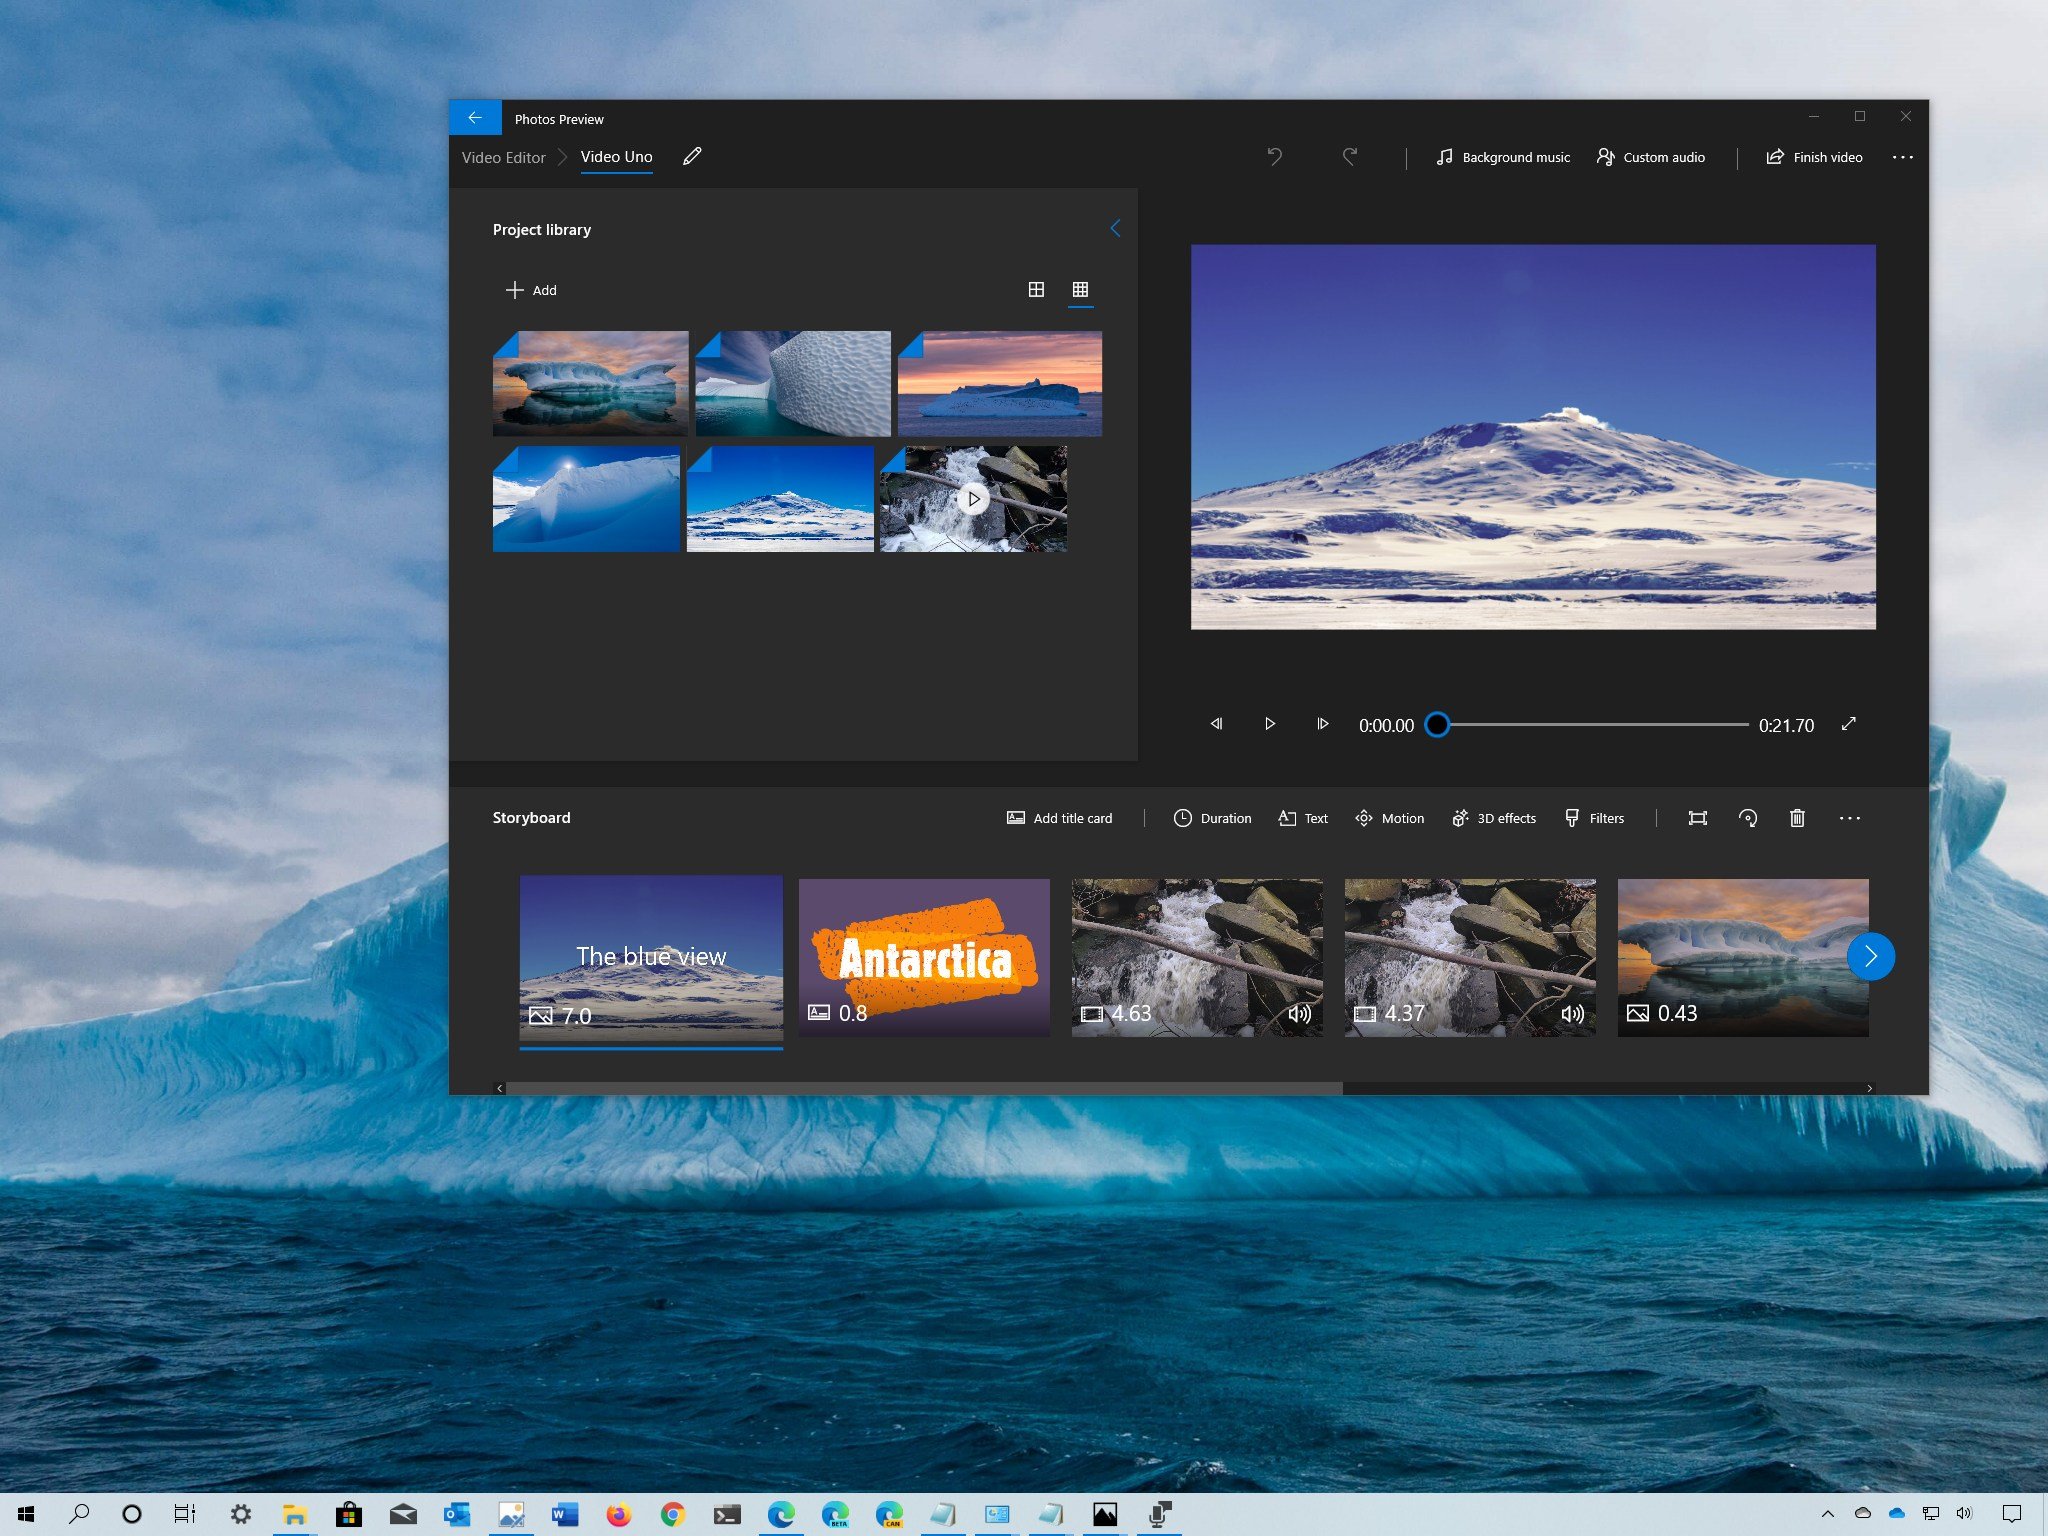 Sử dụng trình chỉnh sửa video trong ứng dụng Photos trên Windows 10 thật dễ dàng và tiện lợi! Bạn có thể tùy chỉnh các video của mình một cách chuyên nghiệp và chỉ với vài thao tác đơn giản. Xem hình ảnh liên quan để khám phá thêm về tính năng tuyệt vời này trên Windows 10!